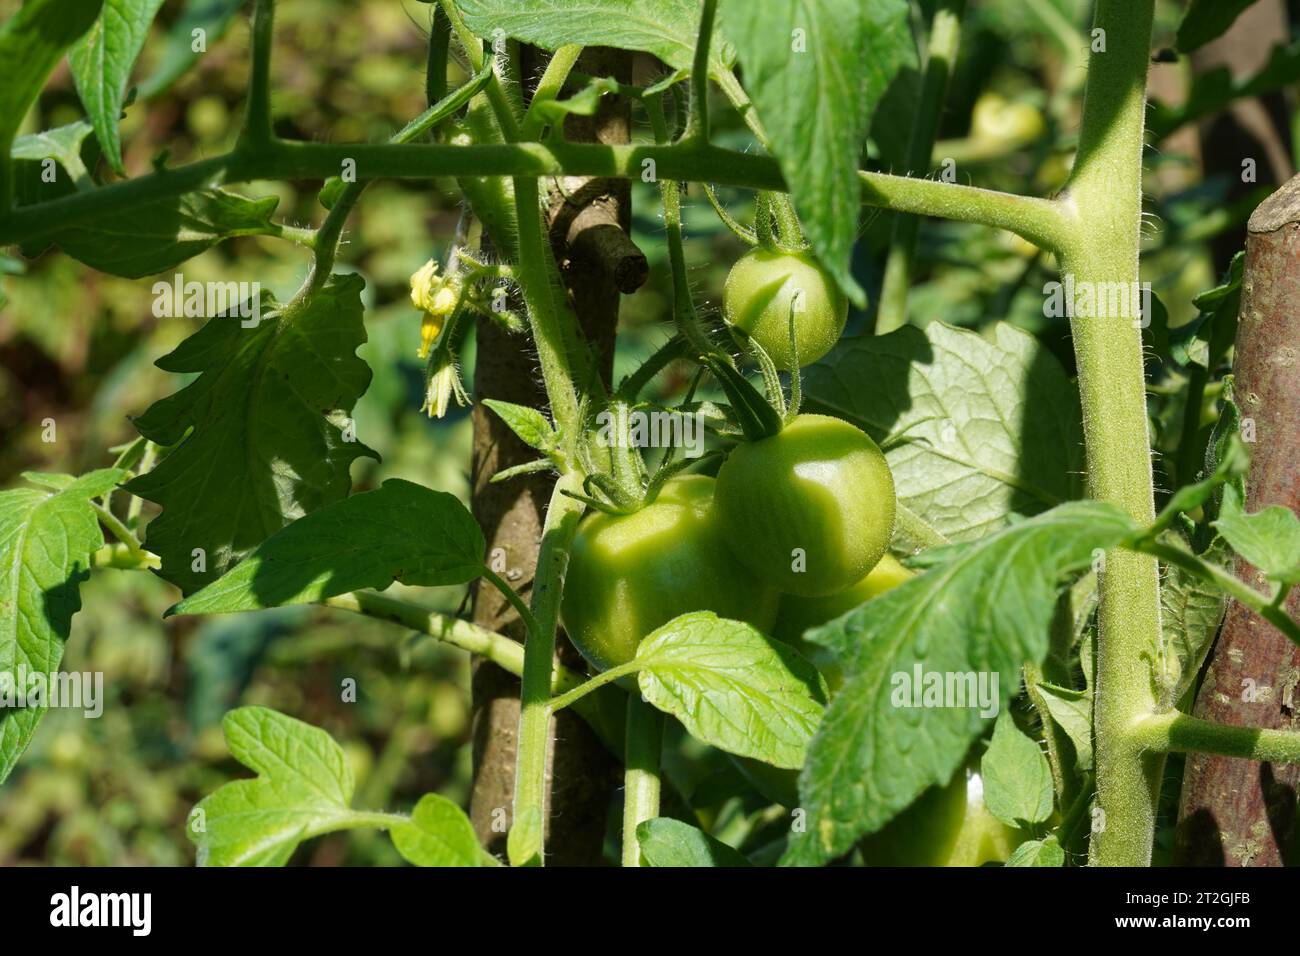 Fruits de tomate non mûrs de couleur verte poussant sur le plant de tomate. Convient comme arrière-plan avec des thèmes de légumes, d'agriculture ou de jardinage. Banque D'Images